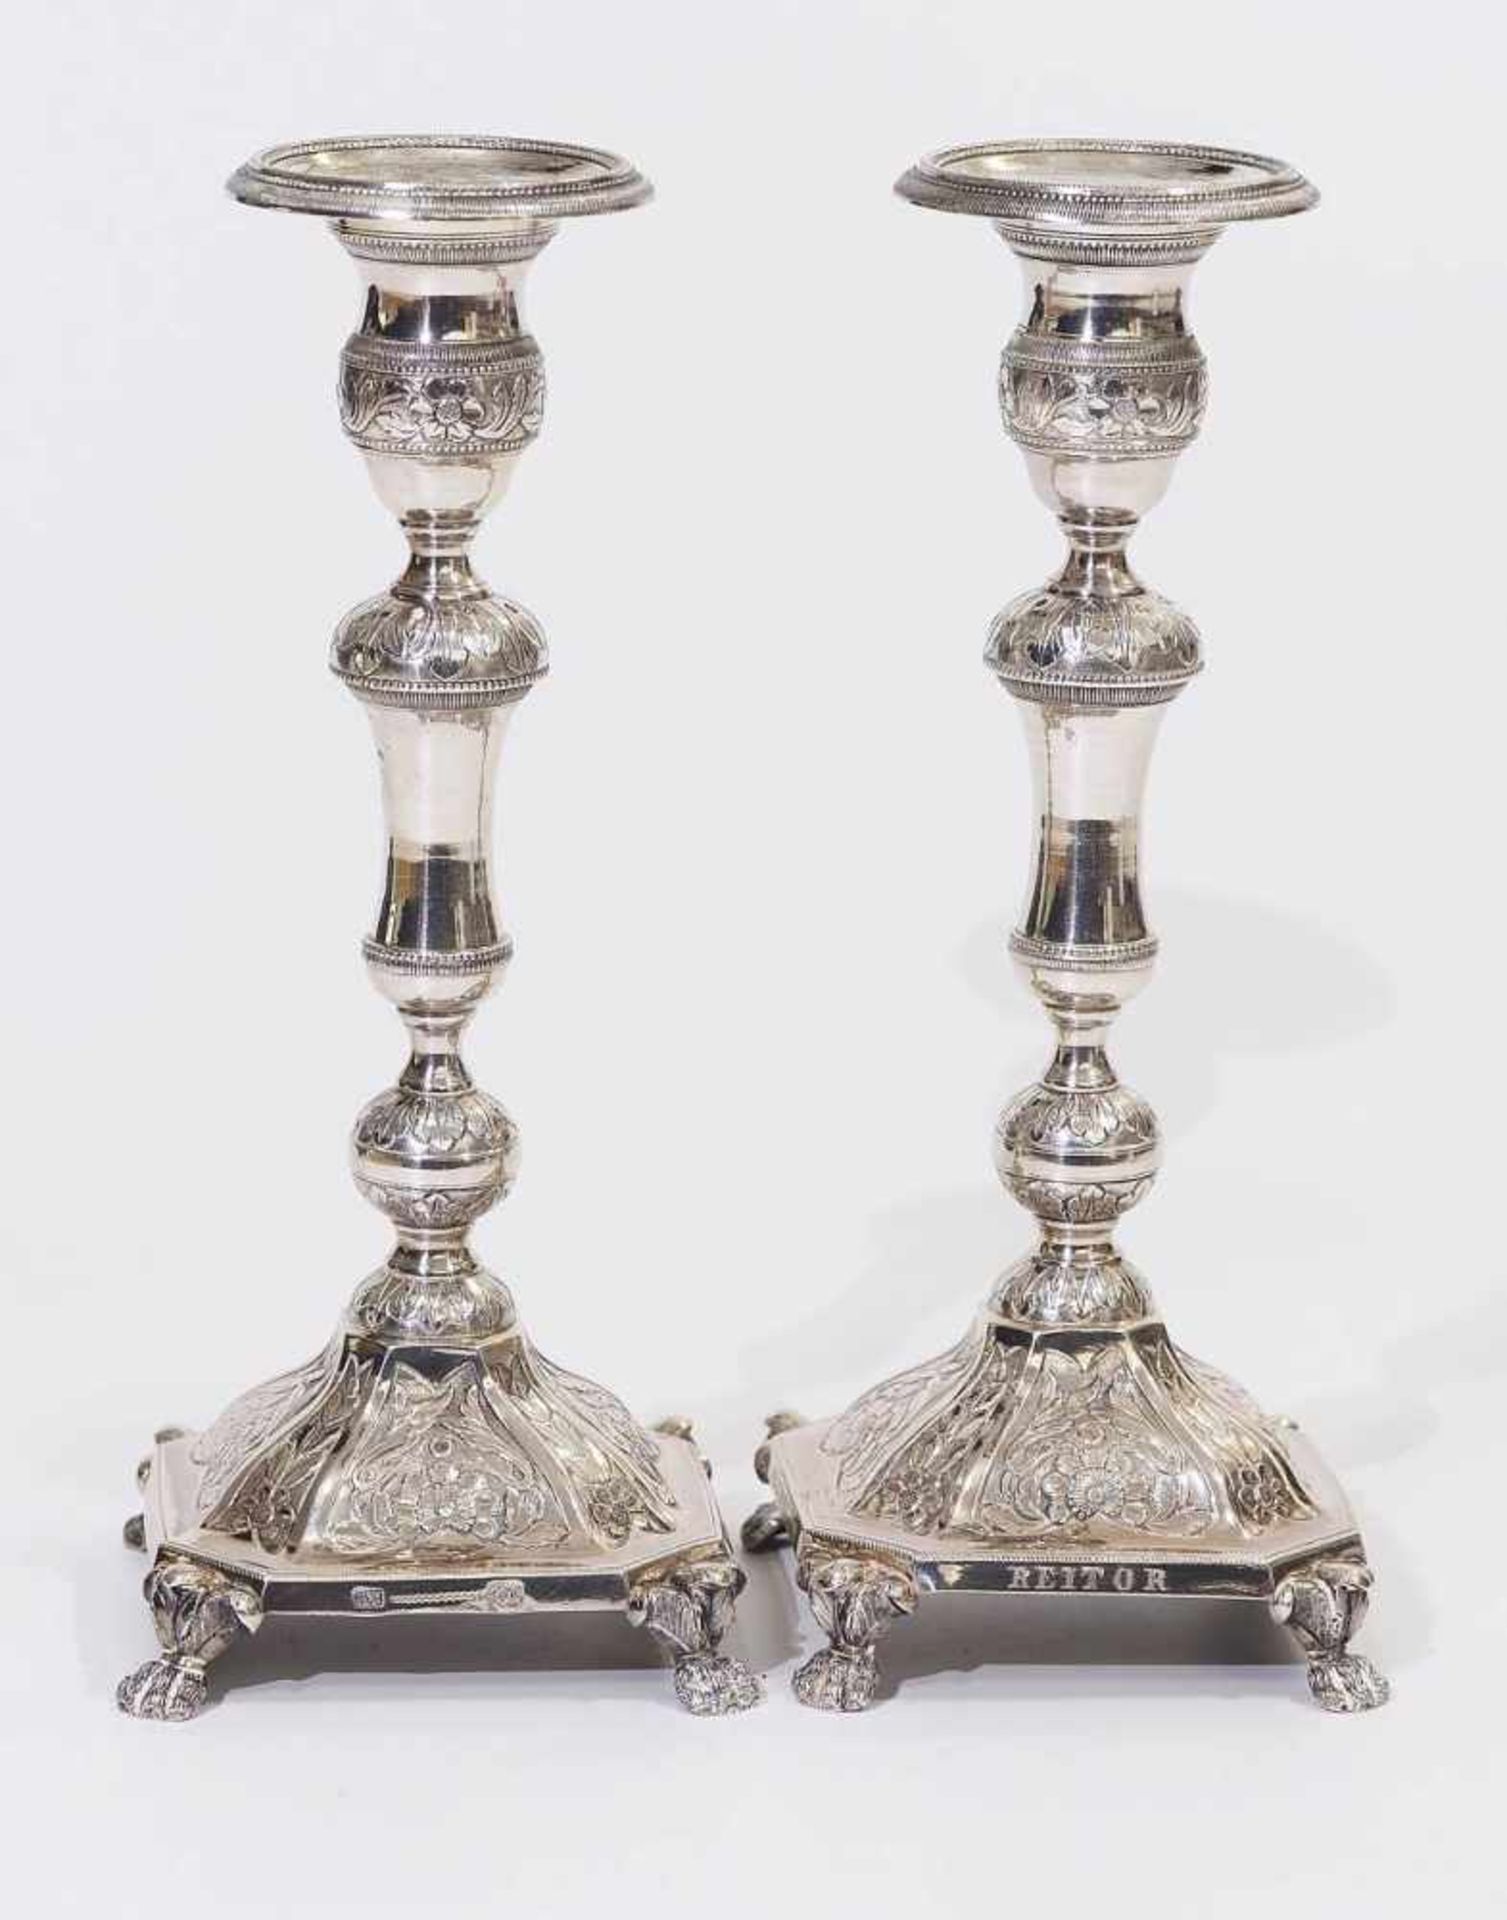 Paar Kerzenleuchter, datiert 1848. Paar Kerzenleuchter, datiert 1848. Silber, getrieben, graviert. - Image 2 of 7